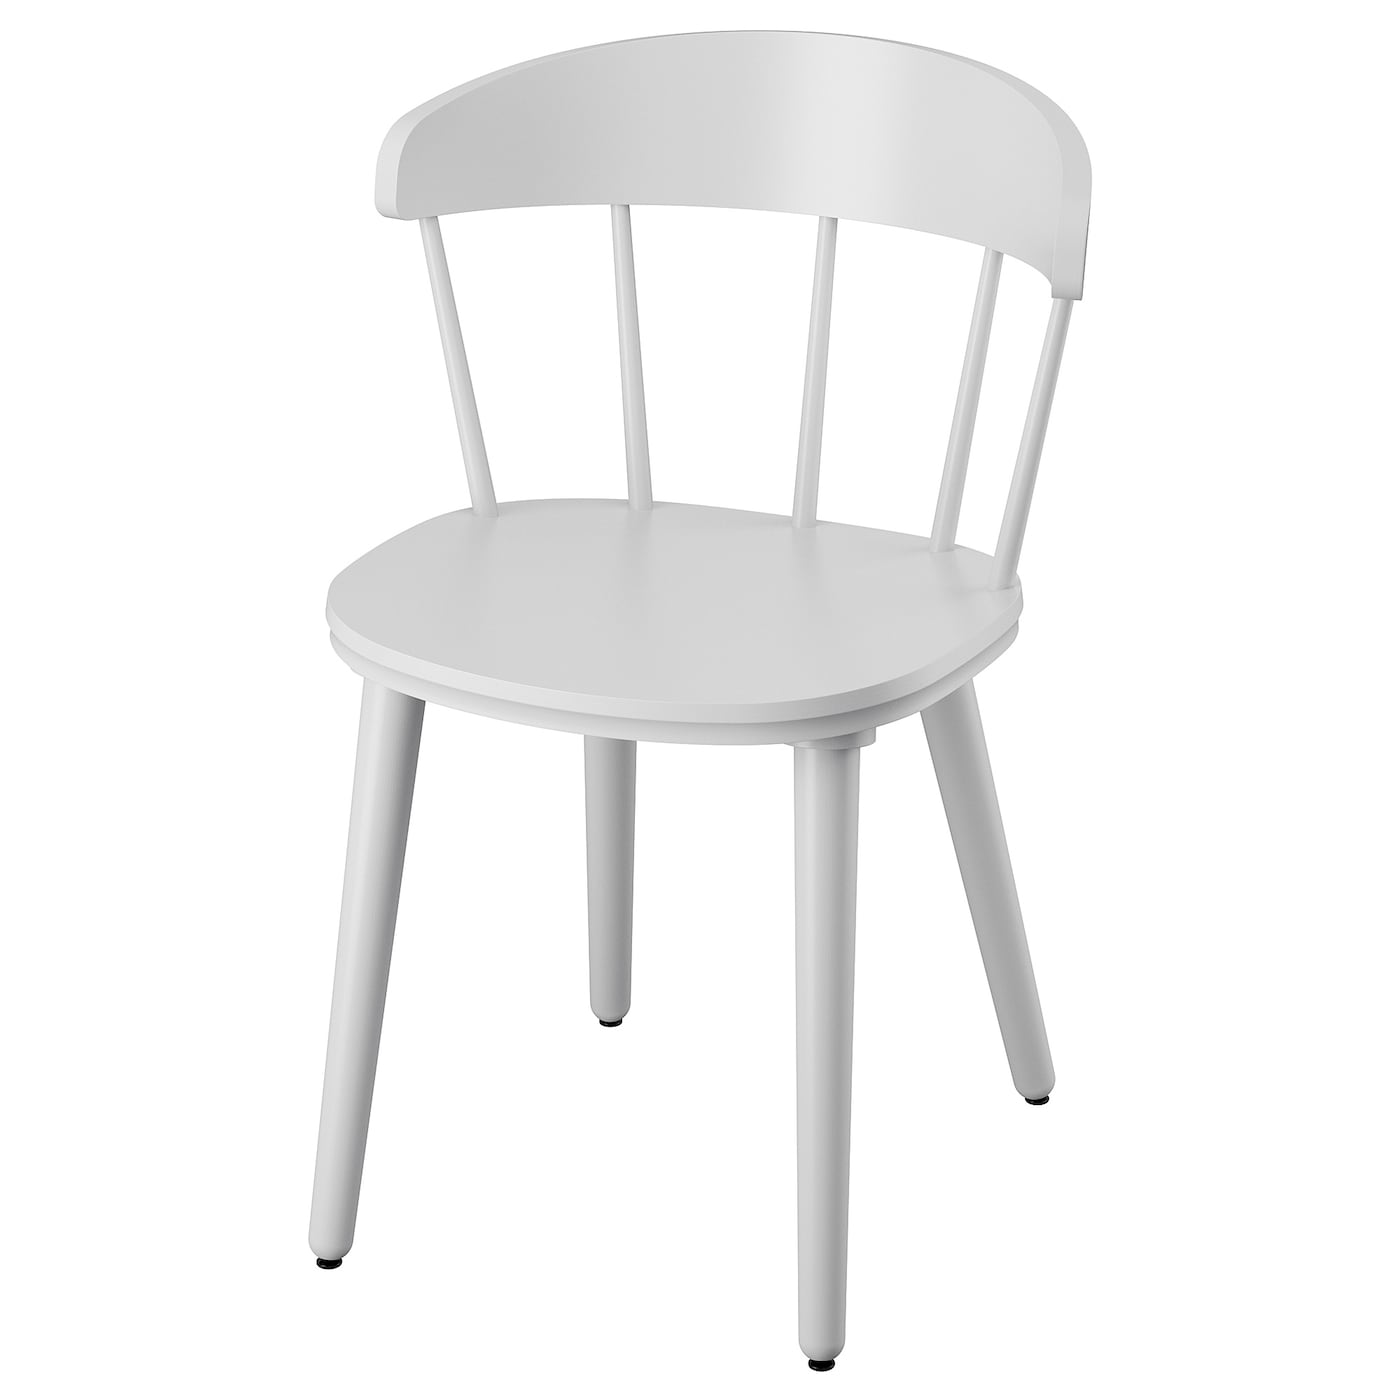 OMTÄNKSAM Stuhl  -  - Möbel Ideen für dein Zuhause von Home Trends. Möbel Trends von Social Media Influencer für dein Skandi Zuhause.